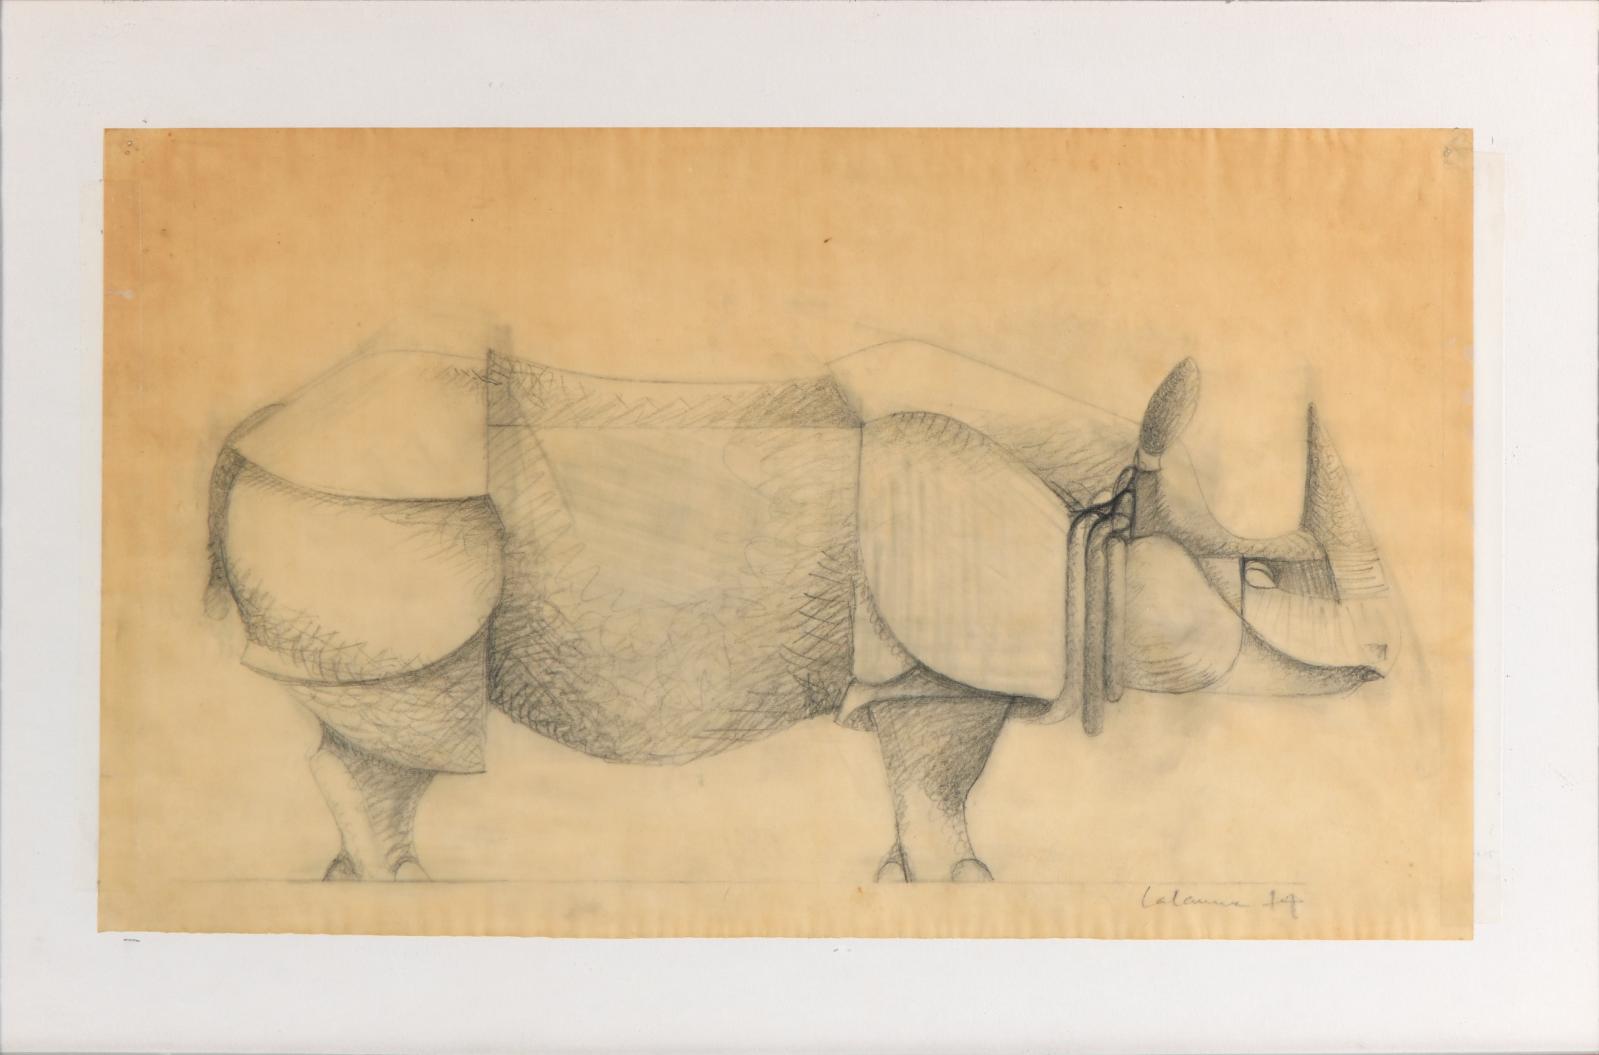 Un rhinocéros de Lalanne sur papier